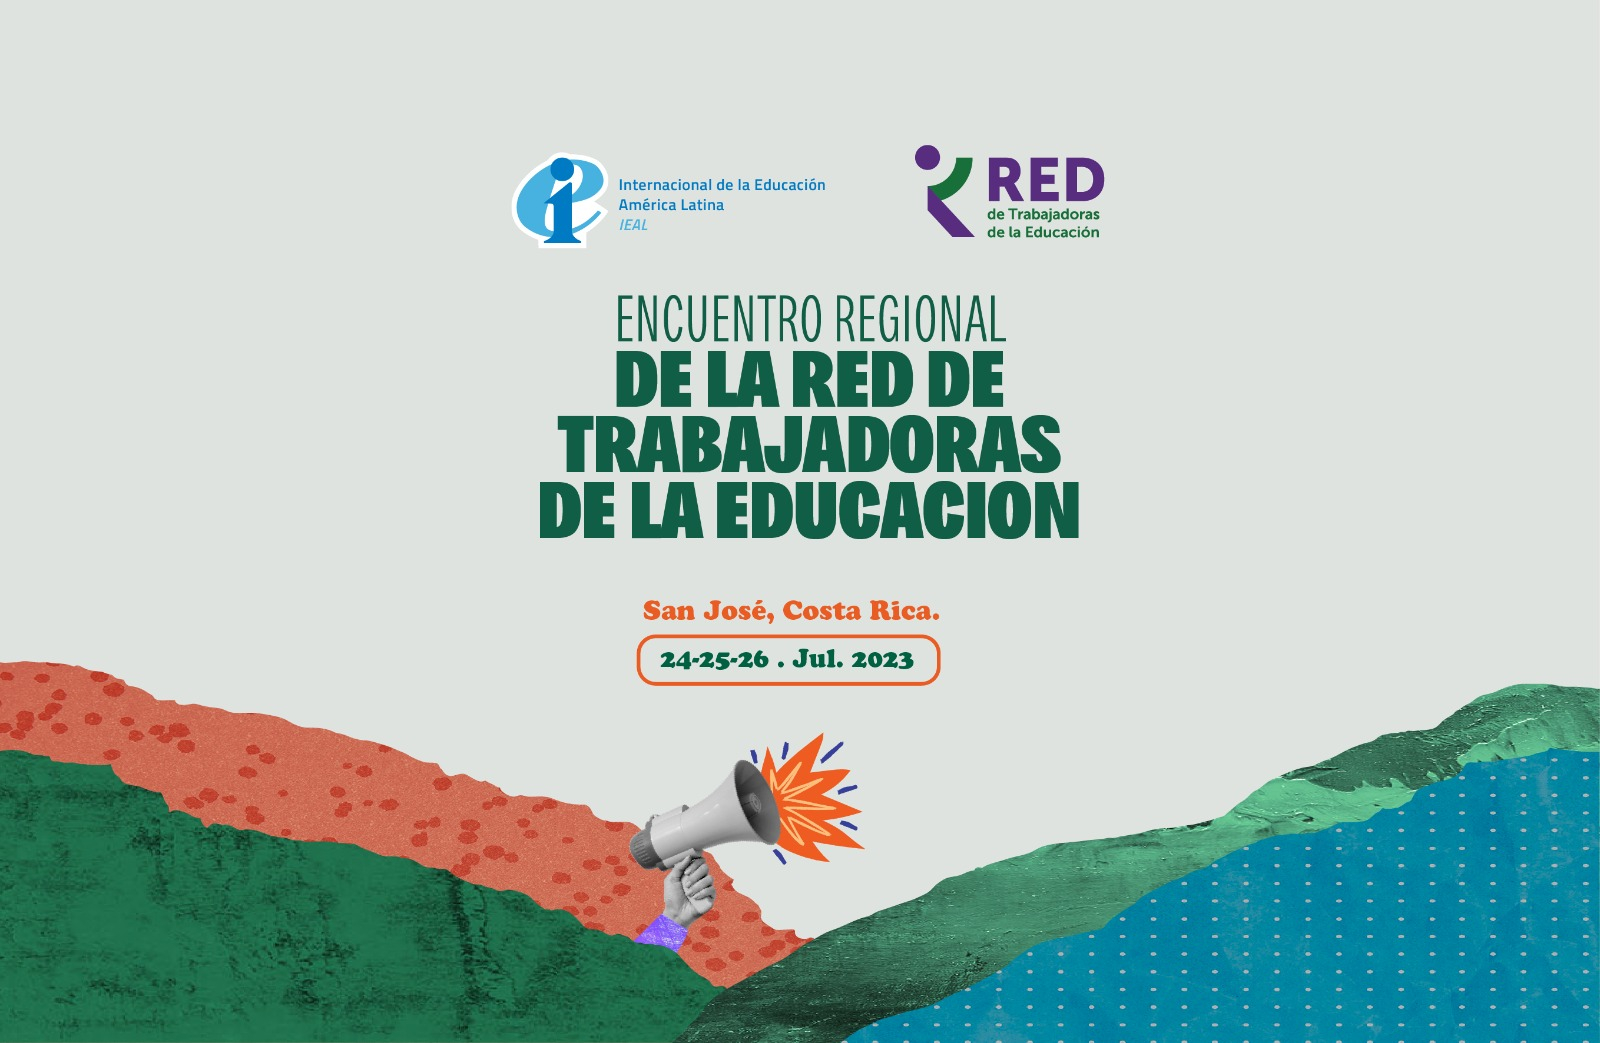 Mujeres sindicalistas de América Latina se reunirán para el Encuentro Regional de la RED de Trabajadoras de la Educación